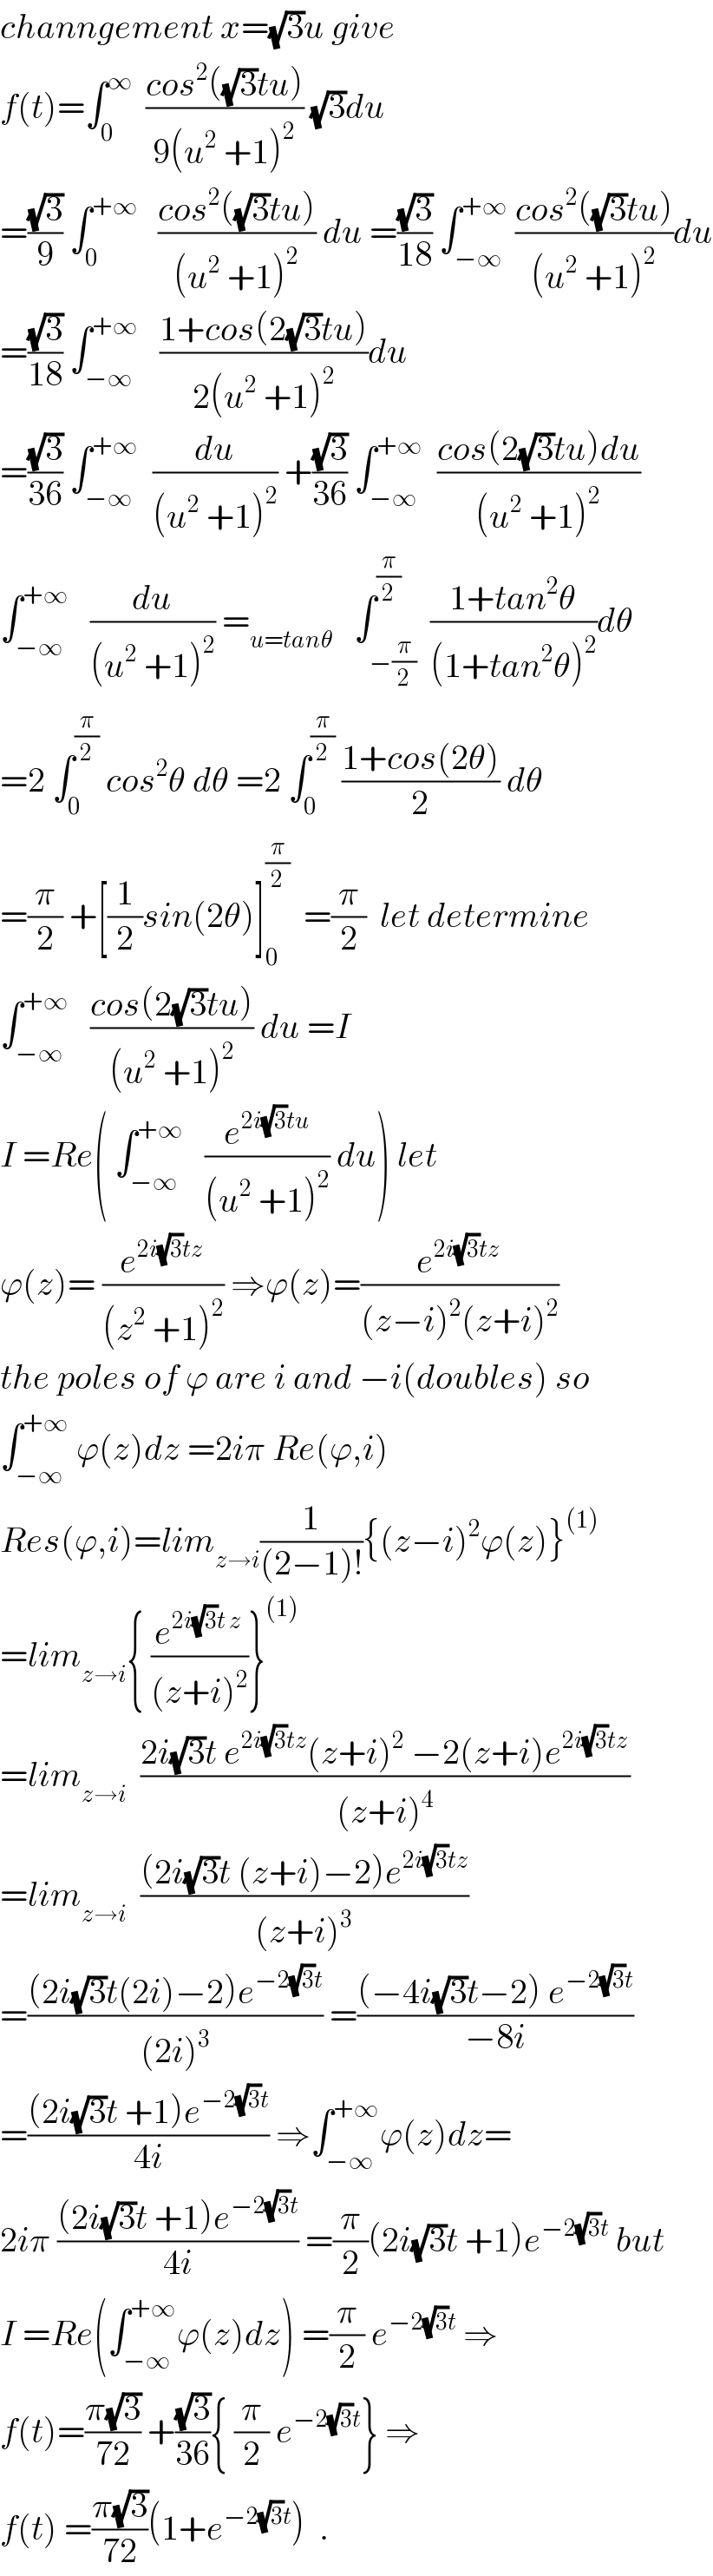 channgement x=(√3)u give   f(t)=∫_0 ^∞   ((cos^2 ((√3)tu))/(9(u^2  +1)^2 )) (√3)du  =((√3)/9) ∫_0 ^(+∞)    ((cos^2 ((√3)tu))/((u^2  +1)^2 )) du =((√3)/(18)) ∫_(−∞) ^(+∞)  ((cos^2 ((√3)tu))/((u^2  +1)^2 ))du  =((√3)/(18)) ∫_(−∞) ^(+∞)    ((1+cos(2(√3)tu))/(2(u^2  +1)^2 ))du  =((√3)/(36)) ∫_(−∞) ^(+∞)   (du/((u^2  +1)^2 )) +((√3)/(36)) ∫_(−∞) ^(+∞)   ((cos(2(√3)tu)du)/((u^2  +1)^2 ))  ∫_(−∞) ^(+∞)    (du/((u^2  +1)^2 )) =_(u=tanθ)    ∫_(−(π/2)) ^(π/2)  ((1+tan^2 θ)/((1+tan^2 θ)^2 ))dθ  =2 ∫_0 ^(π/2)  cos^2 θ dθ =2 ∫_0 ^(π/2)  ((1+cos(2θ))/2) dθ  =(π/2) +[(1/2)sin(2θ)]_0 ^(π/2)   =(π/2)  let determine   ∫_(−∞) ^(+∞)    ((cos(2(√3)tu))/((u^2  +1)^2 )) du =I  I =Re( ∫_(−∞) ^(+∞)    (e^(2i(√3)tu) /((u^2  +1)^2 )) du) let  ϕ(z)= (e^(2i(√3)tz) /((z^2  +1)^2 )) ⇒ϕ(z)=(e^(2i(√3)tz) /((z−i)^2 (z+i)^2 ))  the poles of ϕ are i and −i(doubles) so  ∫_(−∞) ^(+∞)  ϕ(z)dz =2iπ Re(ϕ,i)  Res(ϕ,i)=lim_(z→i) (1/((2−1)!)){(z−i)^2 ϕ(z)}^((1))   =lim_(z→i) { (e^(2i(√3)t z) /((z+i)^2 ))}^((1))   =lim_(z→i)   ((2i(√3)t e^(2i(√3)tz) (z+i)^2  −2(z+i)e^(2i(√3)tz) )/((z+i)^4 ))  =lim_(z→i)   (((2i(√3)t (z+i)−2)e^(2i(√3)tz) )/((z+i)^3 ))  =(((2i(√3)t(2i)−2)e^(−2(√3)t) )/((2i)^3 )) =(((−4i(√3)t−2) e^(−2(√3)t) )/(−8i))  =(((2i(√3)t +1)e^(−2(√3)t) )/(4i)) ⇒∫_(−∞) ^(+∞) ϕ(z)dz=  2iπ (((2i(√3)t +1)e^(−2(√3)t) )/(4i)) =(π/2)(2i(√3)t +1)e^(−2(√3)t)  but  I =Re(∫_(−∞) ^(+∞) ϕ(z)dz) =(π/2) e^(−2(√3)t)  ⇒  f(t)=((π(√3))/(72)) +((√3)/(36)){ (π/2) e^(−2(√3)t) } ⇒  f(t) =((π(√3))/(72))(1+e^(−2(√3)t) )  .  